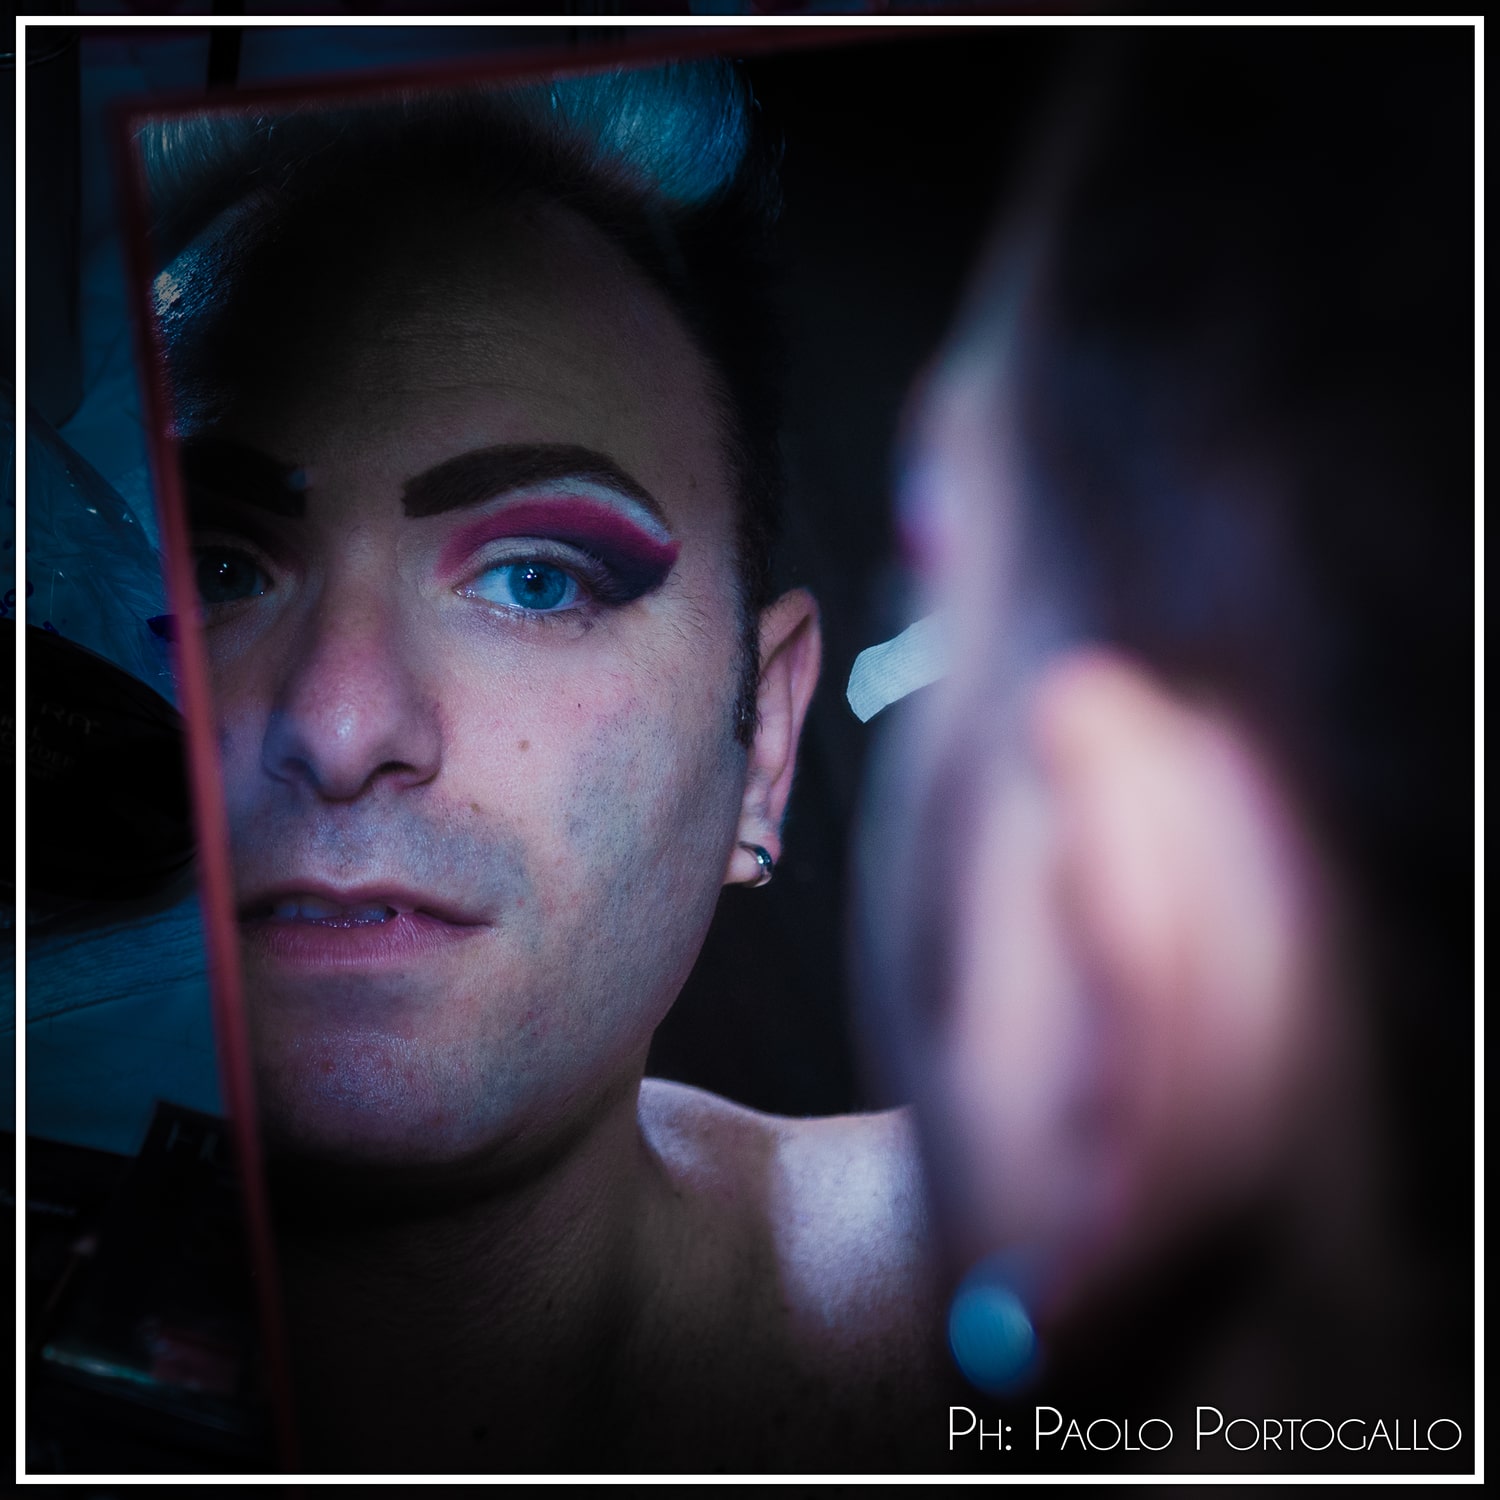 Paolo Portogallo - Drag Queen - Oltre il Velo